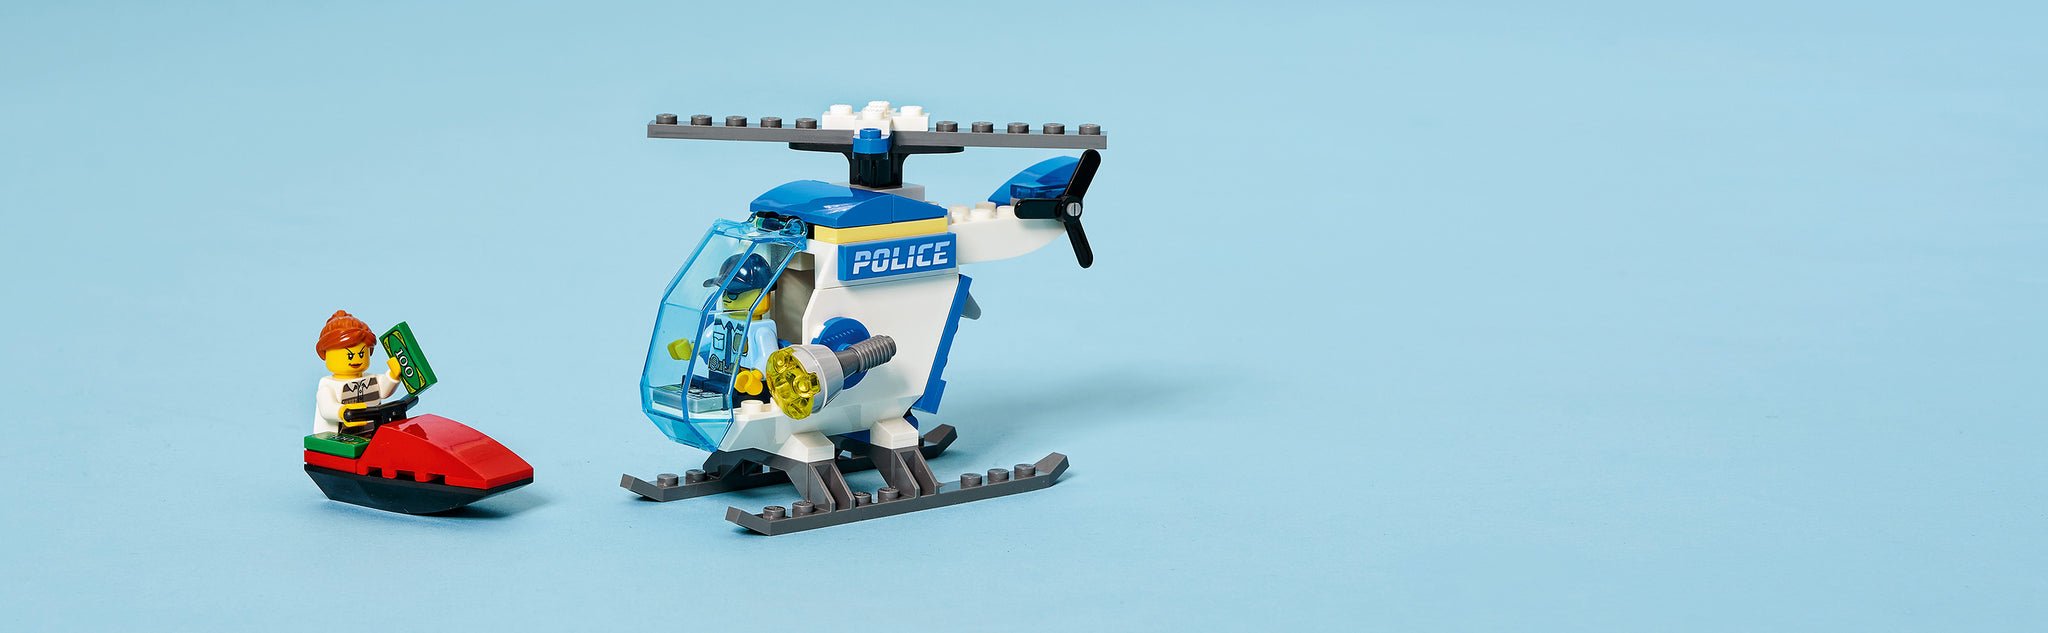 LEGO 60275 Helikopter van de politie met boeven